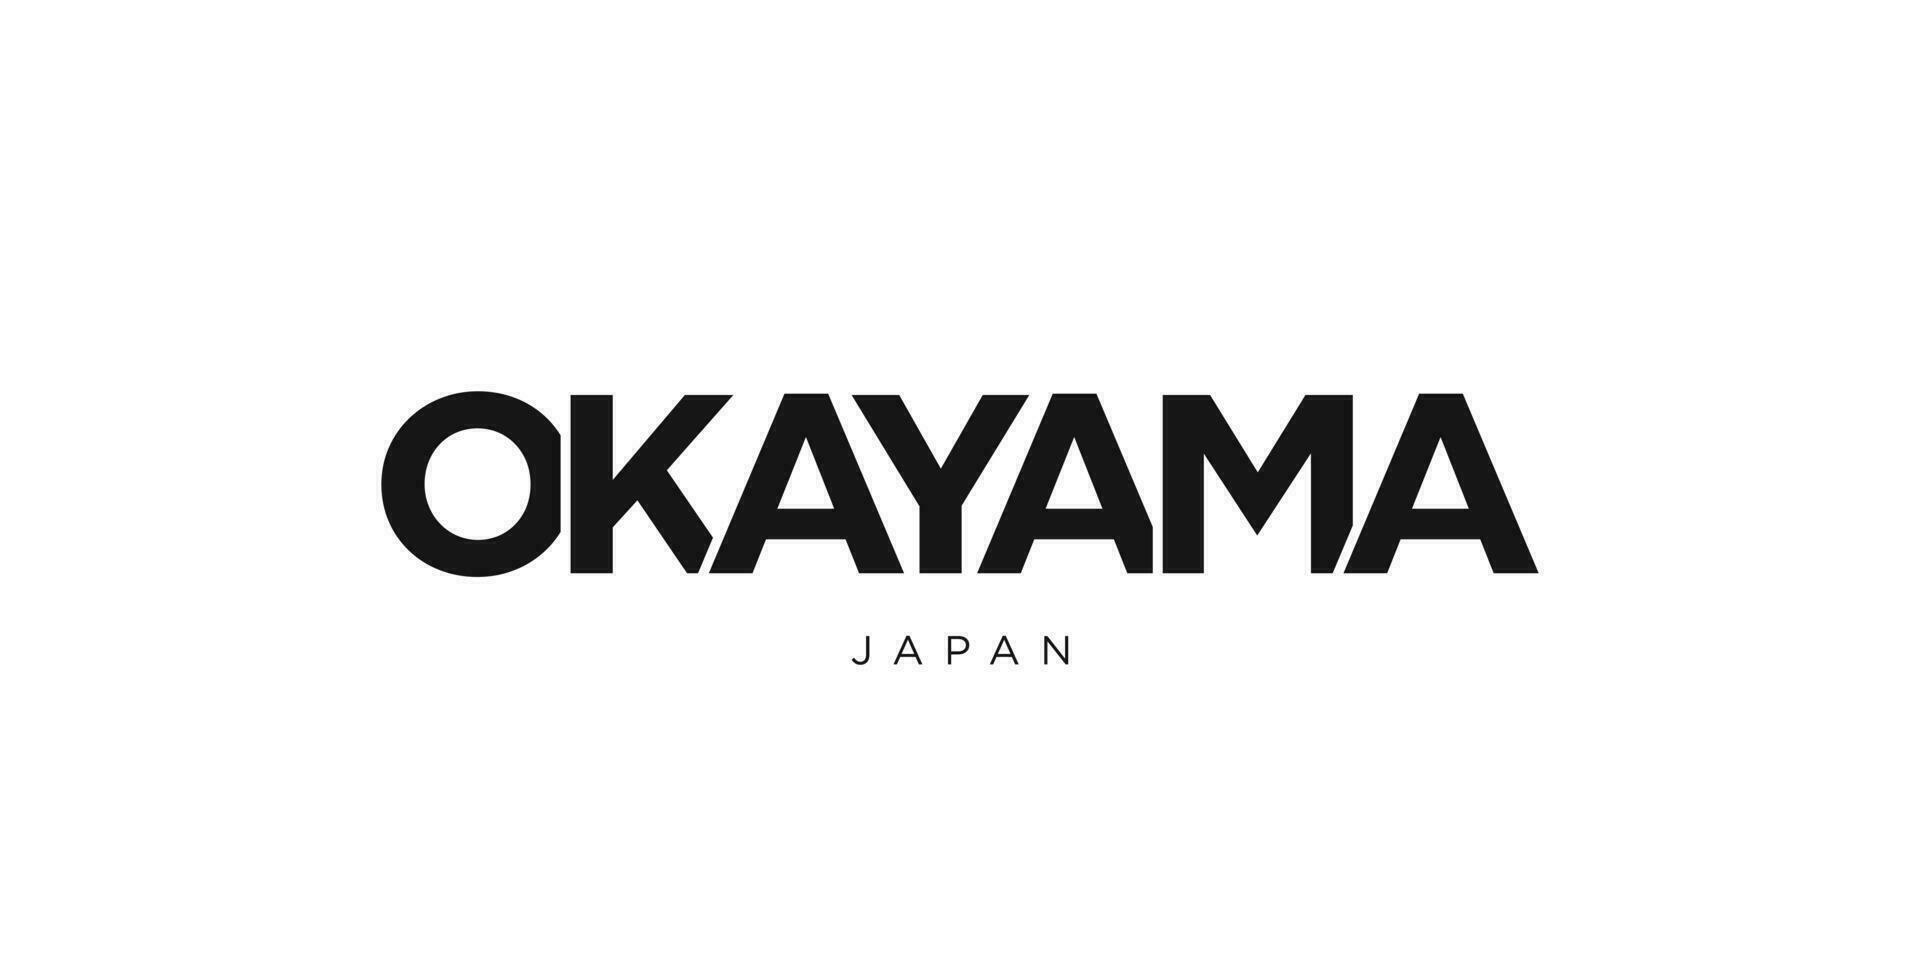 okayama im das Japan Emblem. das Design Eigenschaften ein geometrisch Stil, Vektor Illustration mit Fett gedruckt Typografie im ein modern Schriftart. das Grafik Slogan Beschriftung.